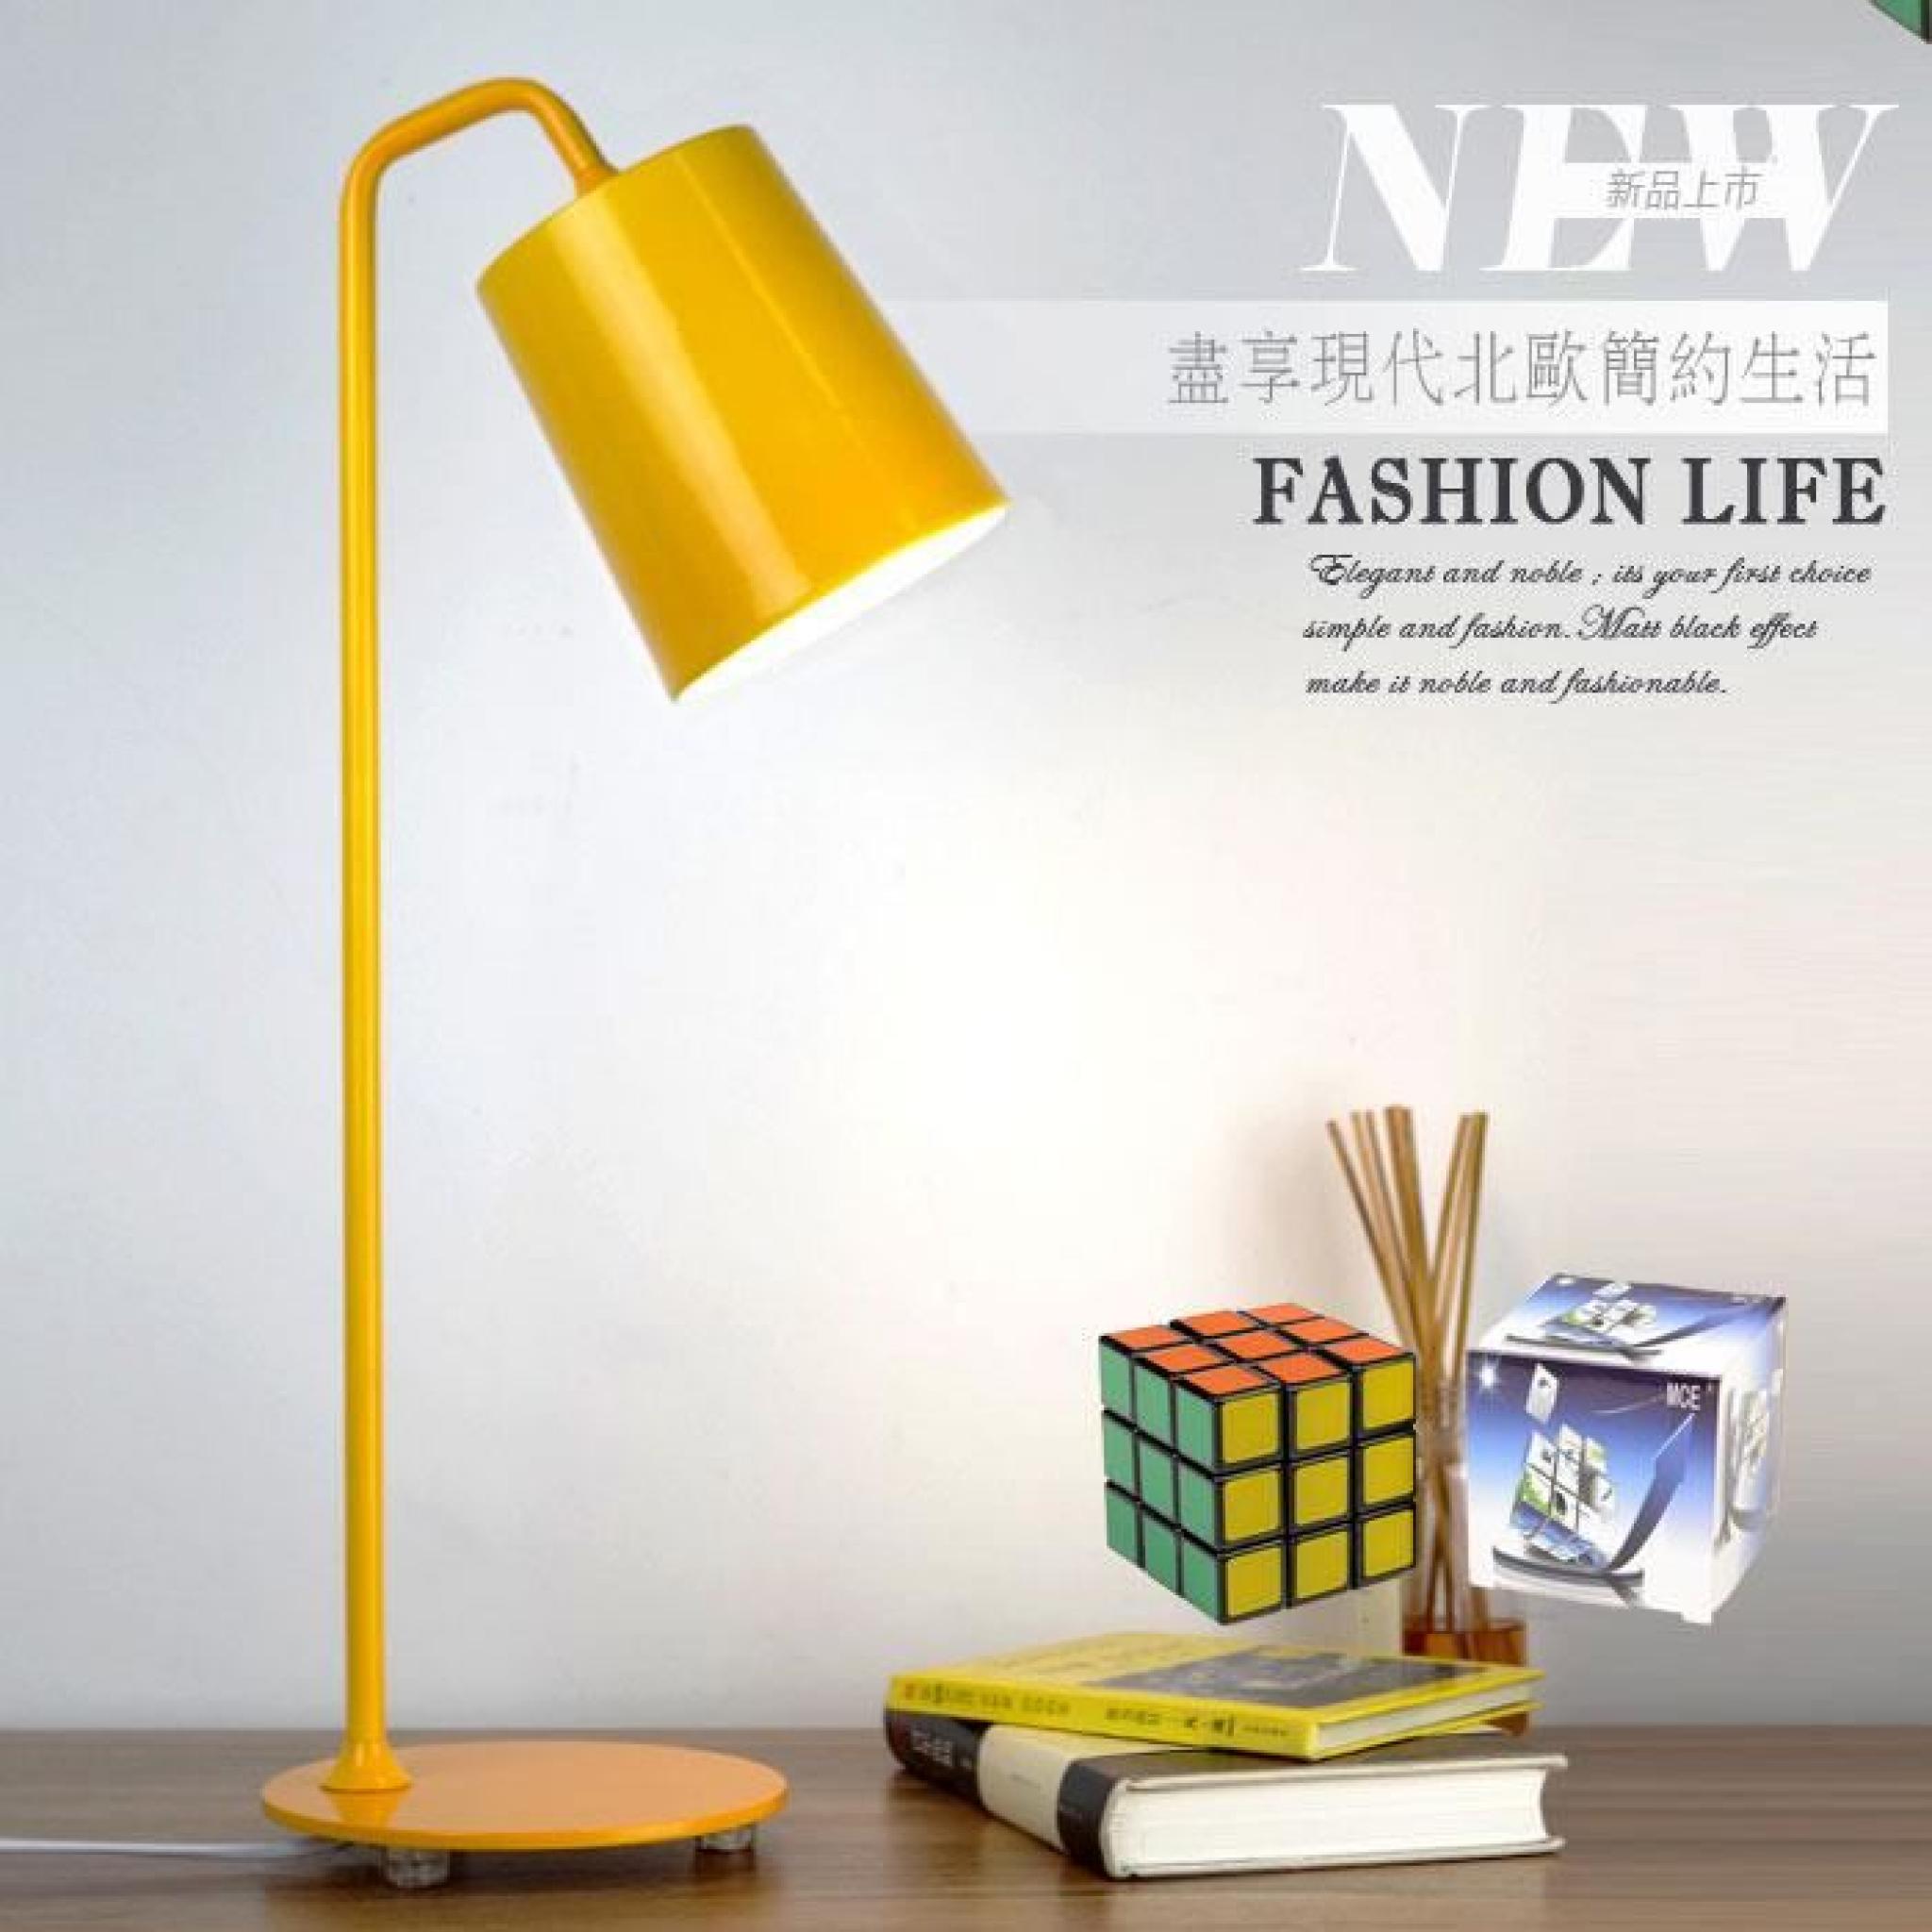 MCE ® Lampe à poser LED de travail design classique et simple + un Rubik's cube gratuit